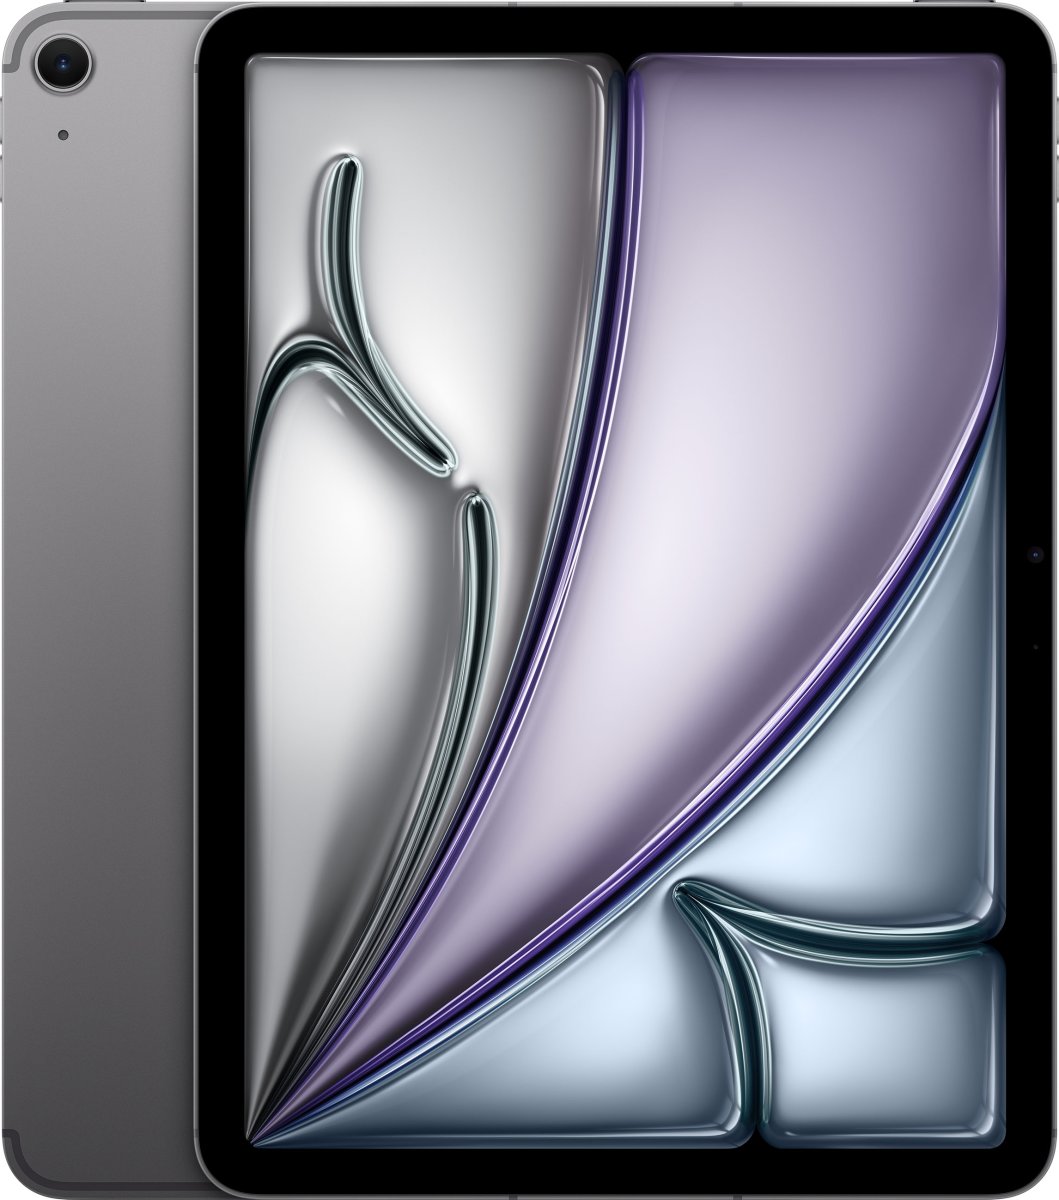 Apple iPad Air 11", Wi-Fi, 128GB, space grey